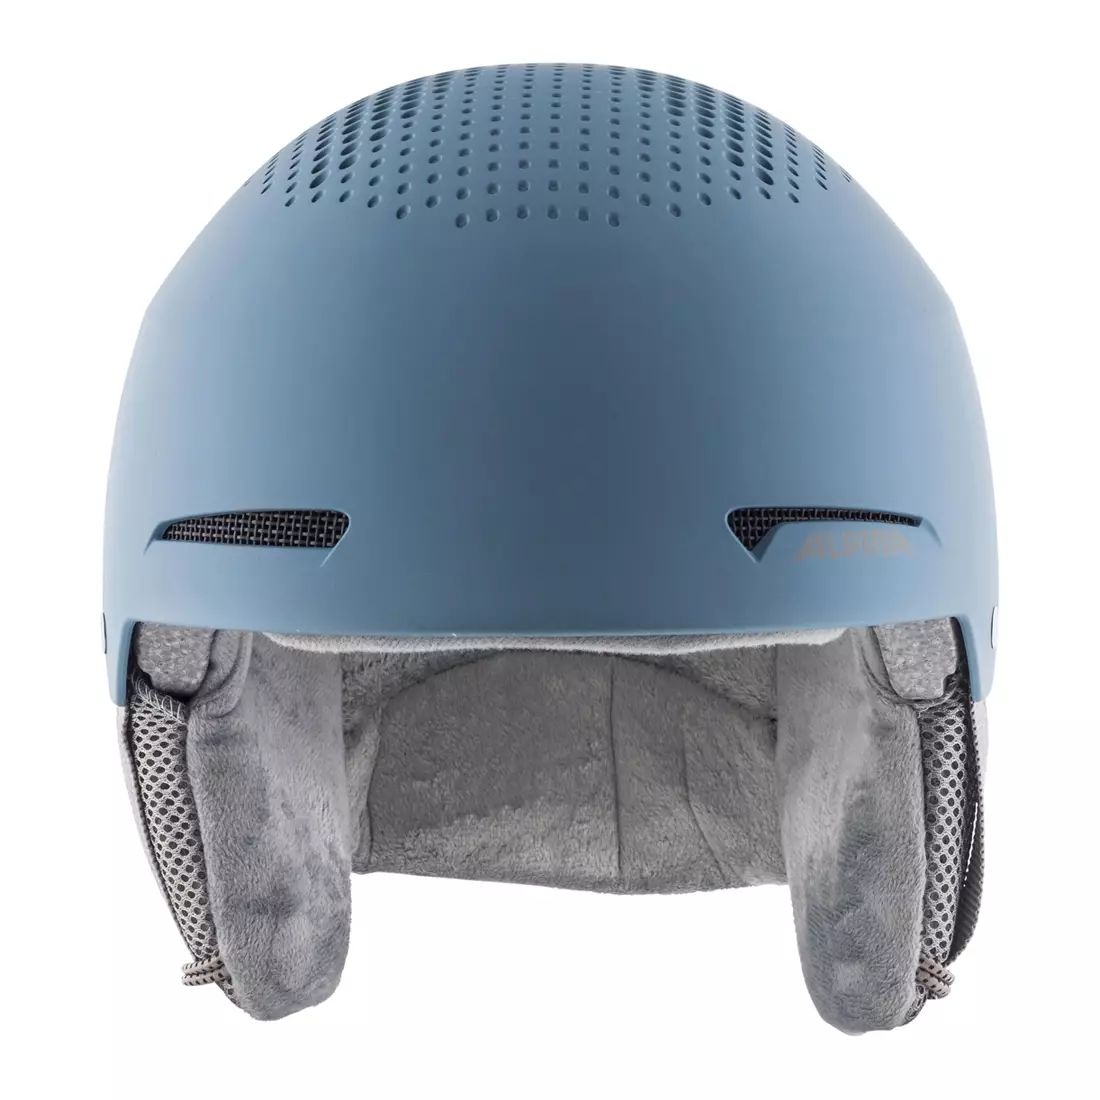 ALPINA ZUPO dětská lyžařská helma fialová modrá matná